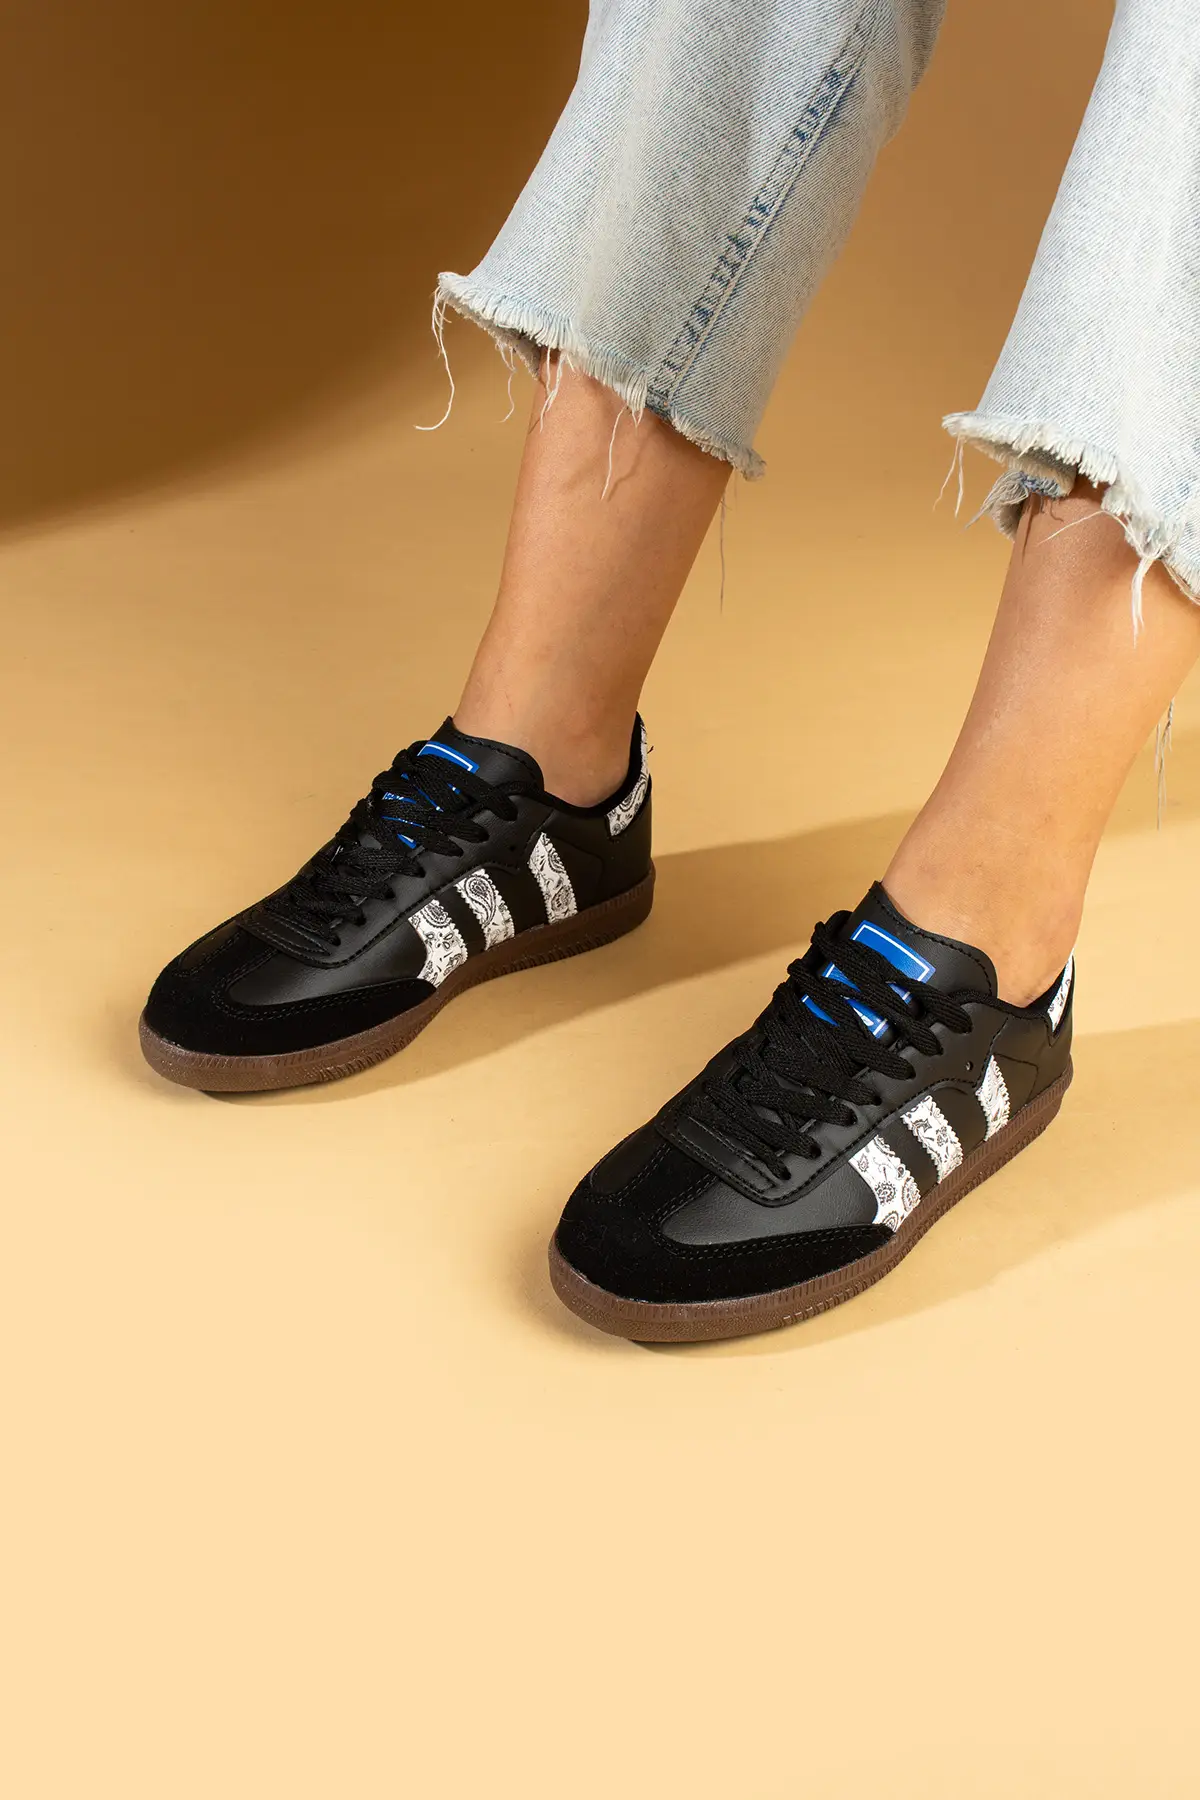 Pembe Potin Bağcıklı Comfort Taban 3 Şeritli Kadın Sneaker 001-1009-SiyahBeyazŞal - Siyah